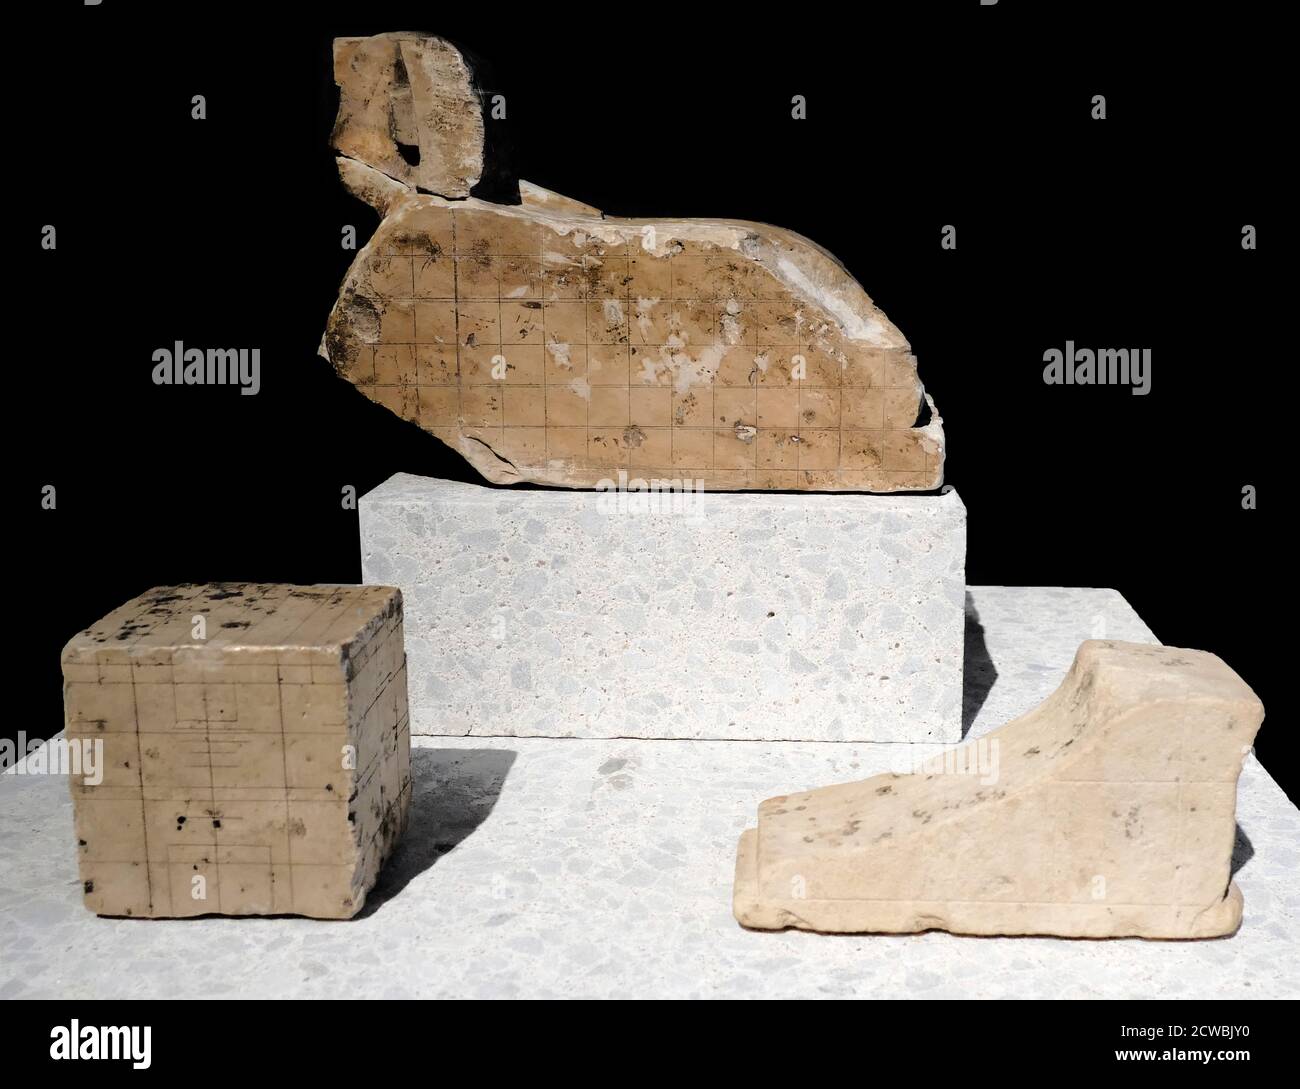 Sammlung von alten ägyptischen Objekten, einschließlich dem Modell einer Sphinx, unfertigen Fuß und Block mit Gitter-System Stockfoto